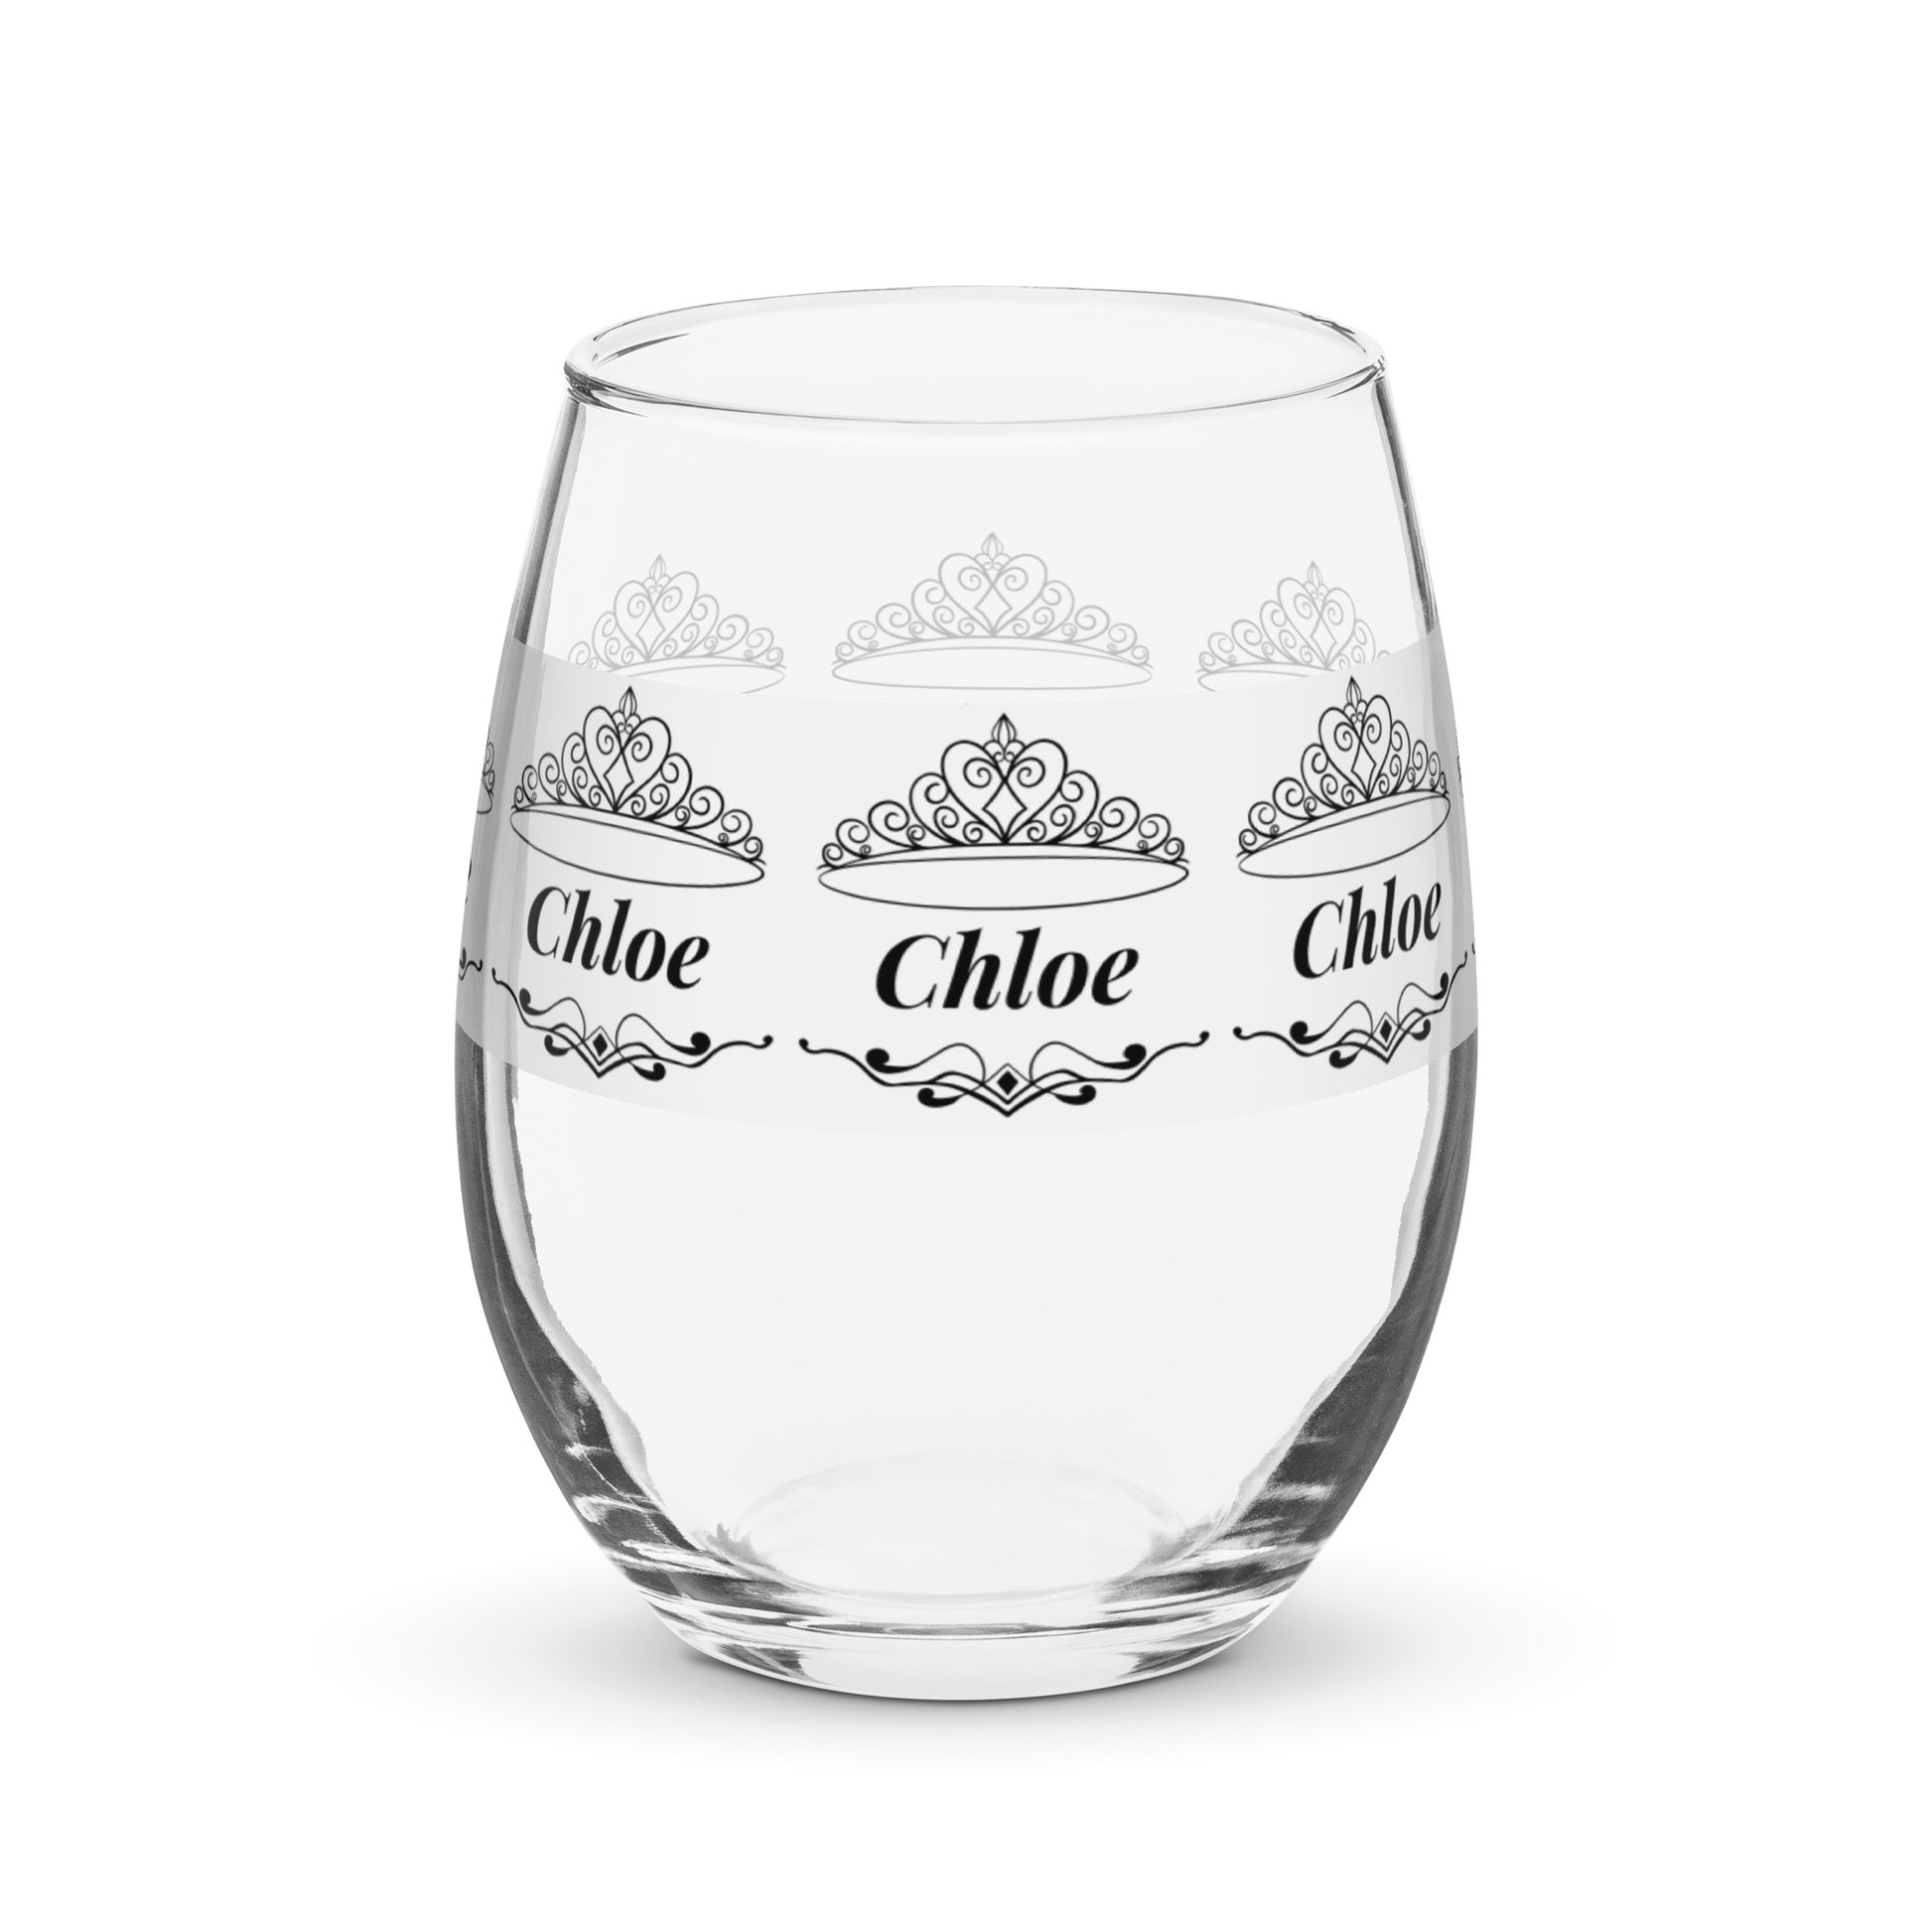 Chloe nombre copa de vino copa de vino personalizada copa de vino